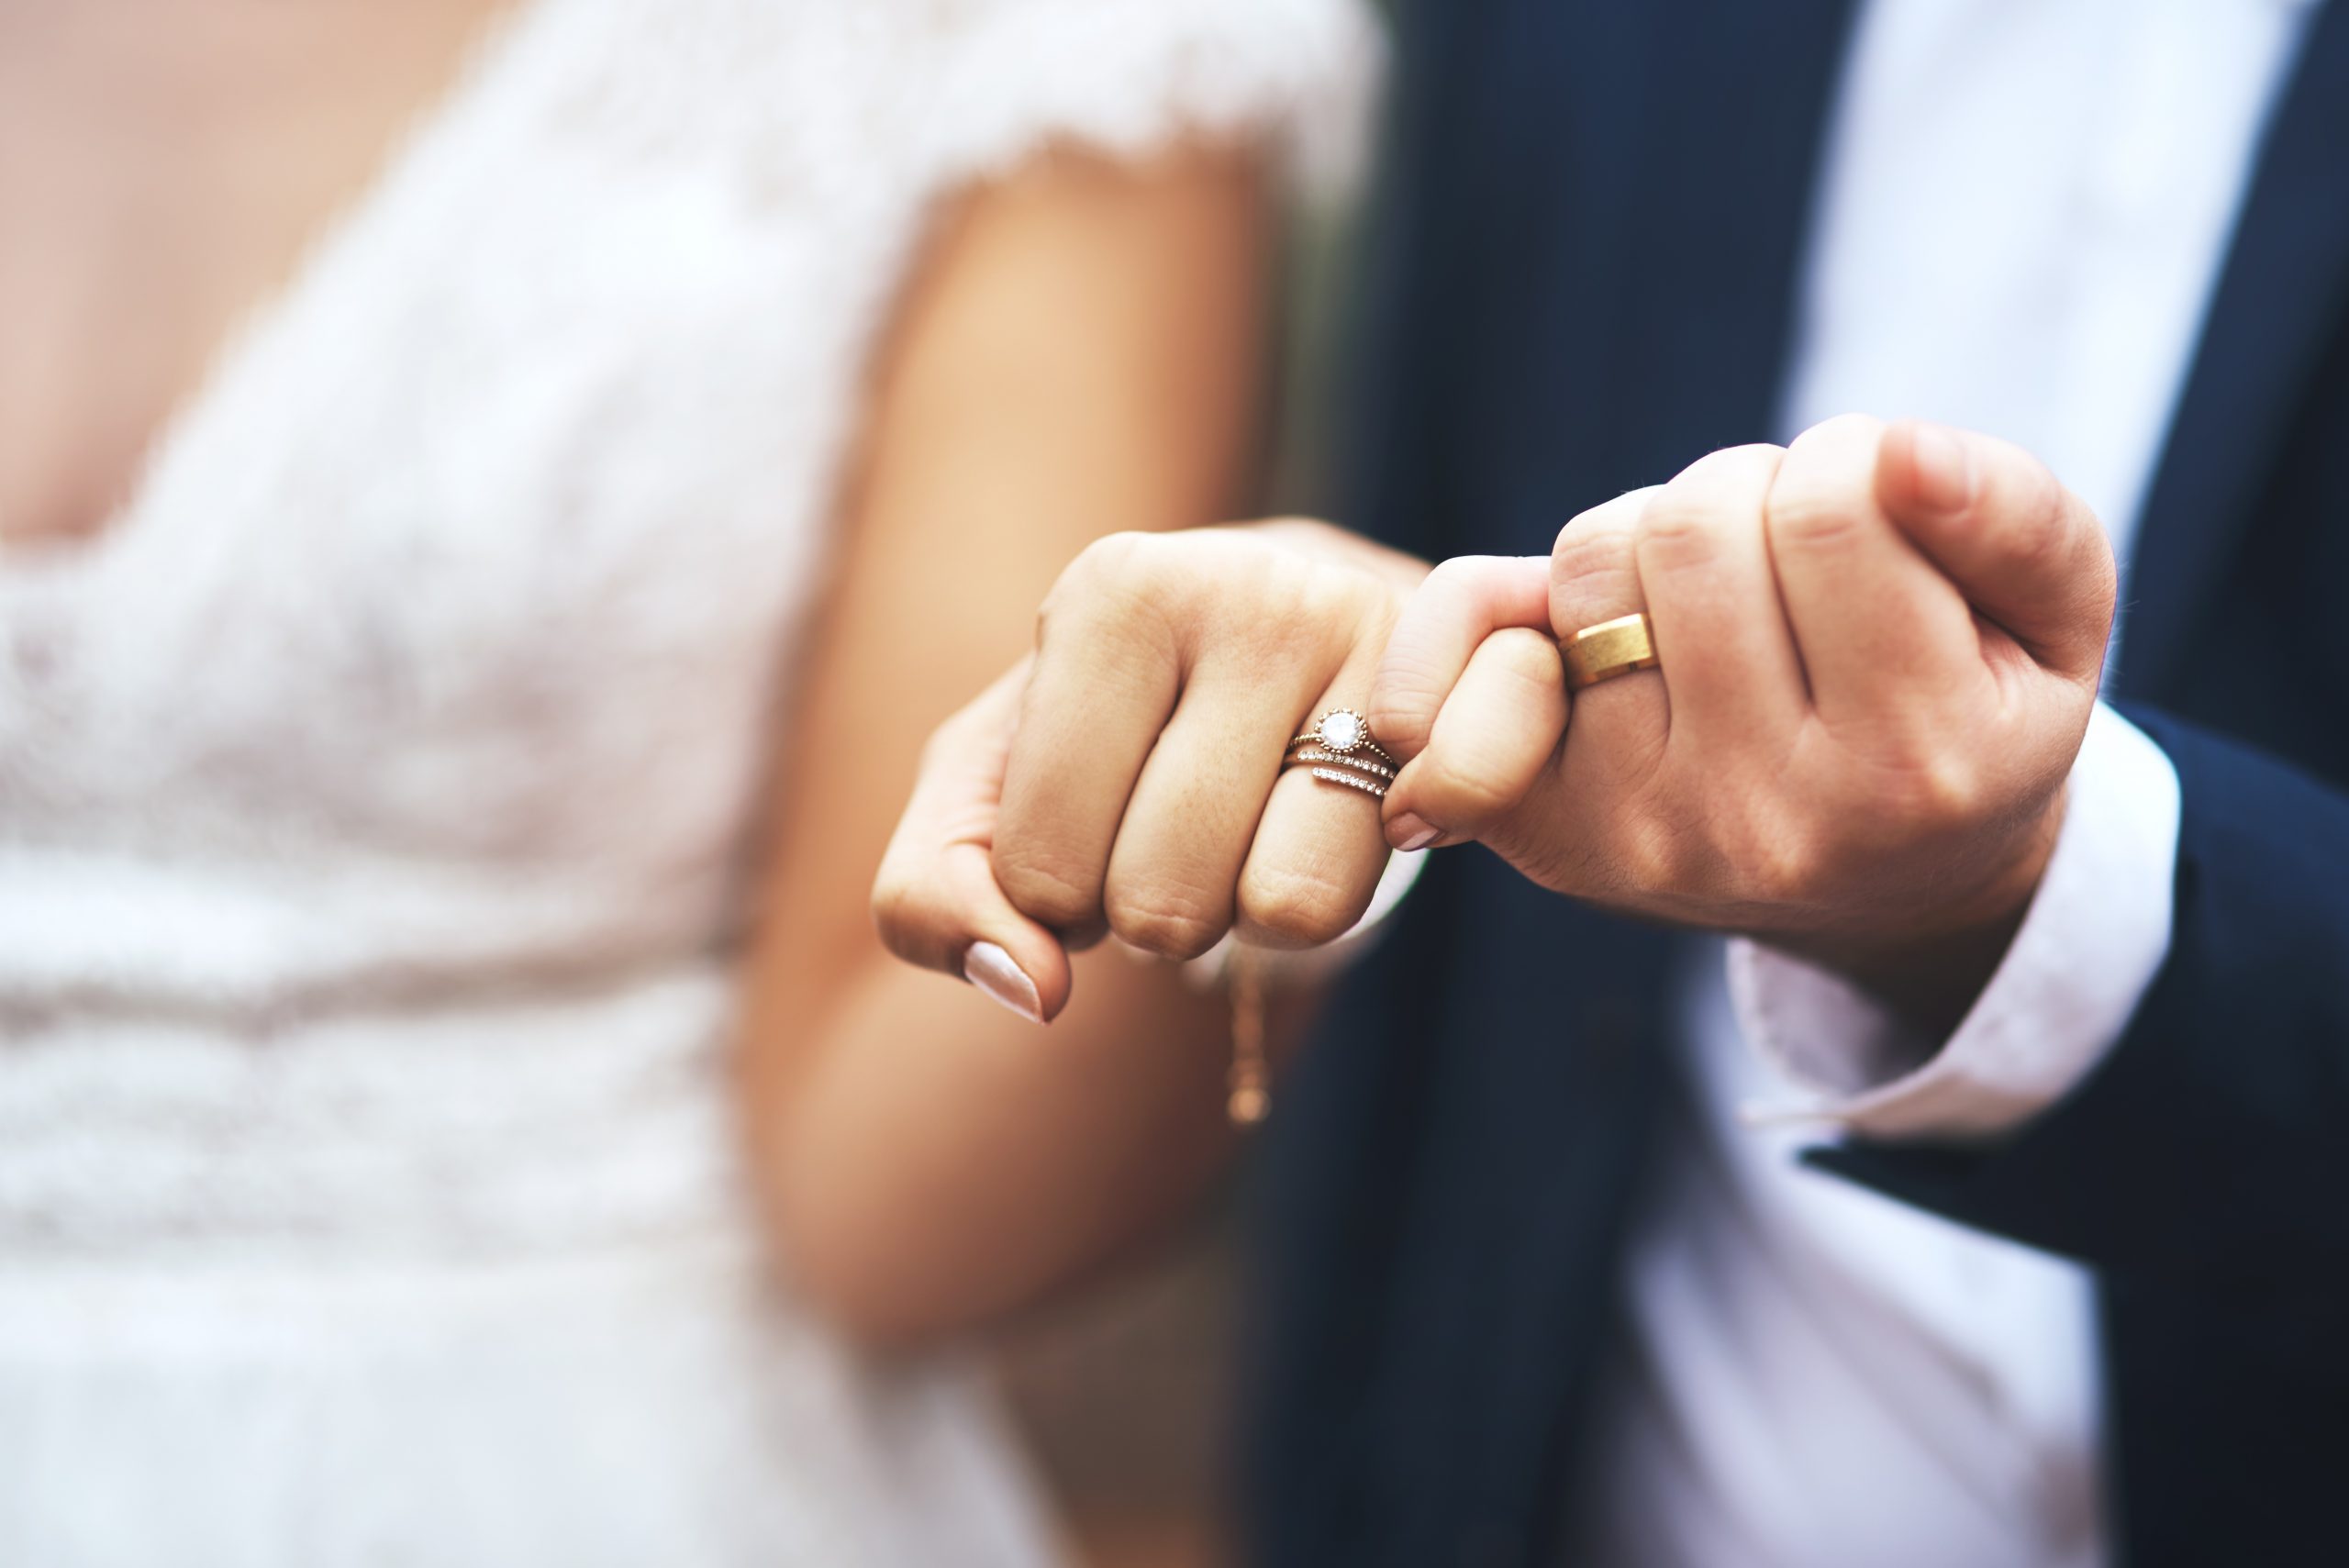 Zašto je dobro biti u braku: 4 više nego dobra razloga